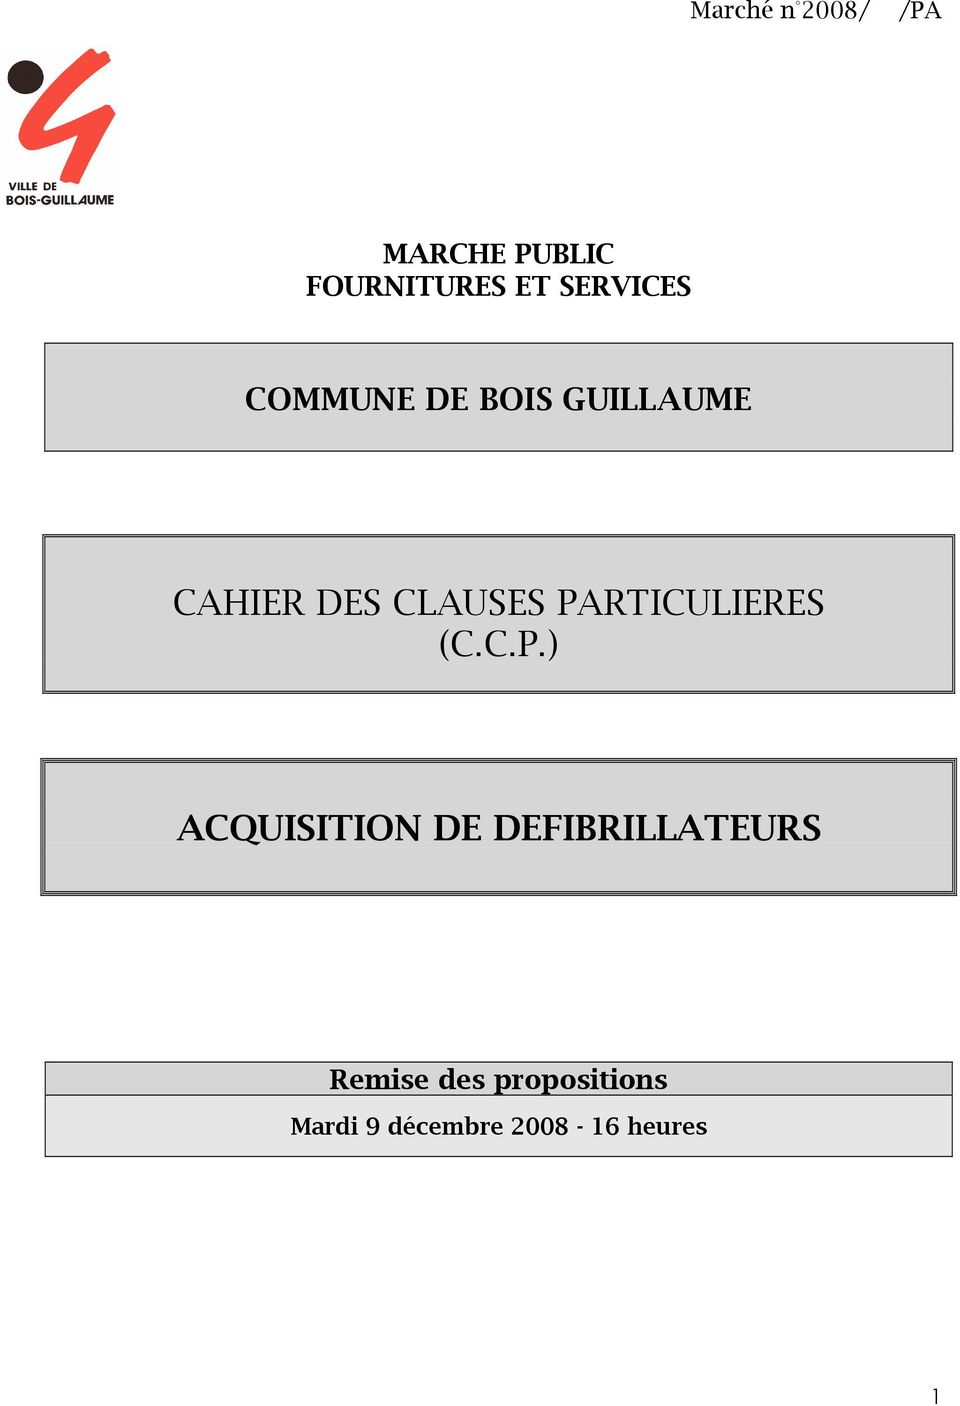 PARTICULIERES (C.C.P.) ACQUISITION DE DEFIBRILLATEURS